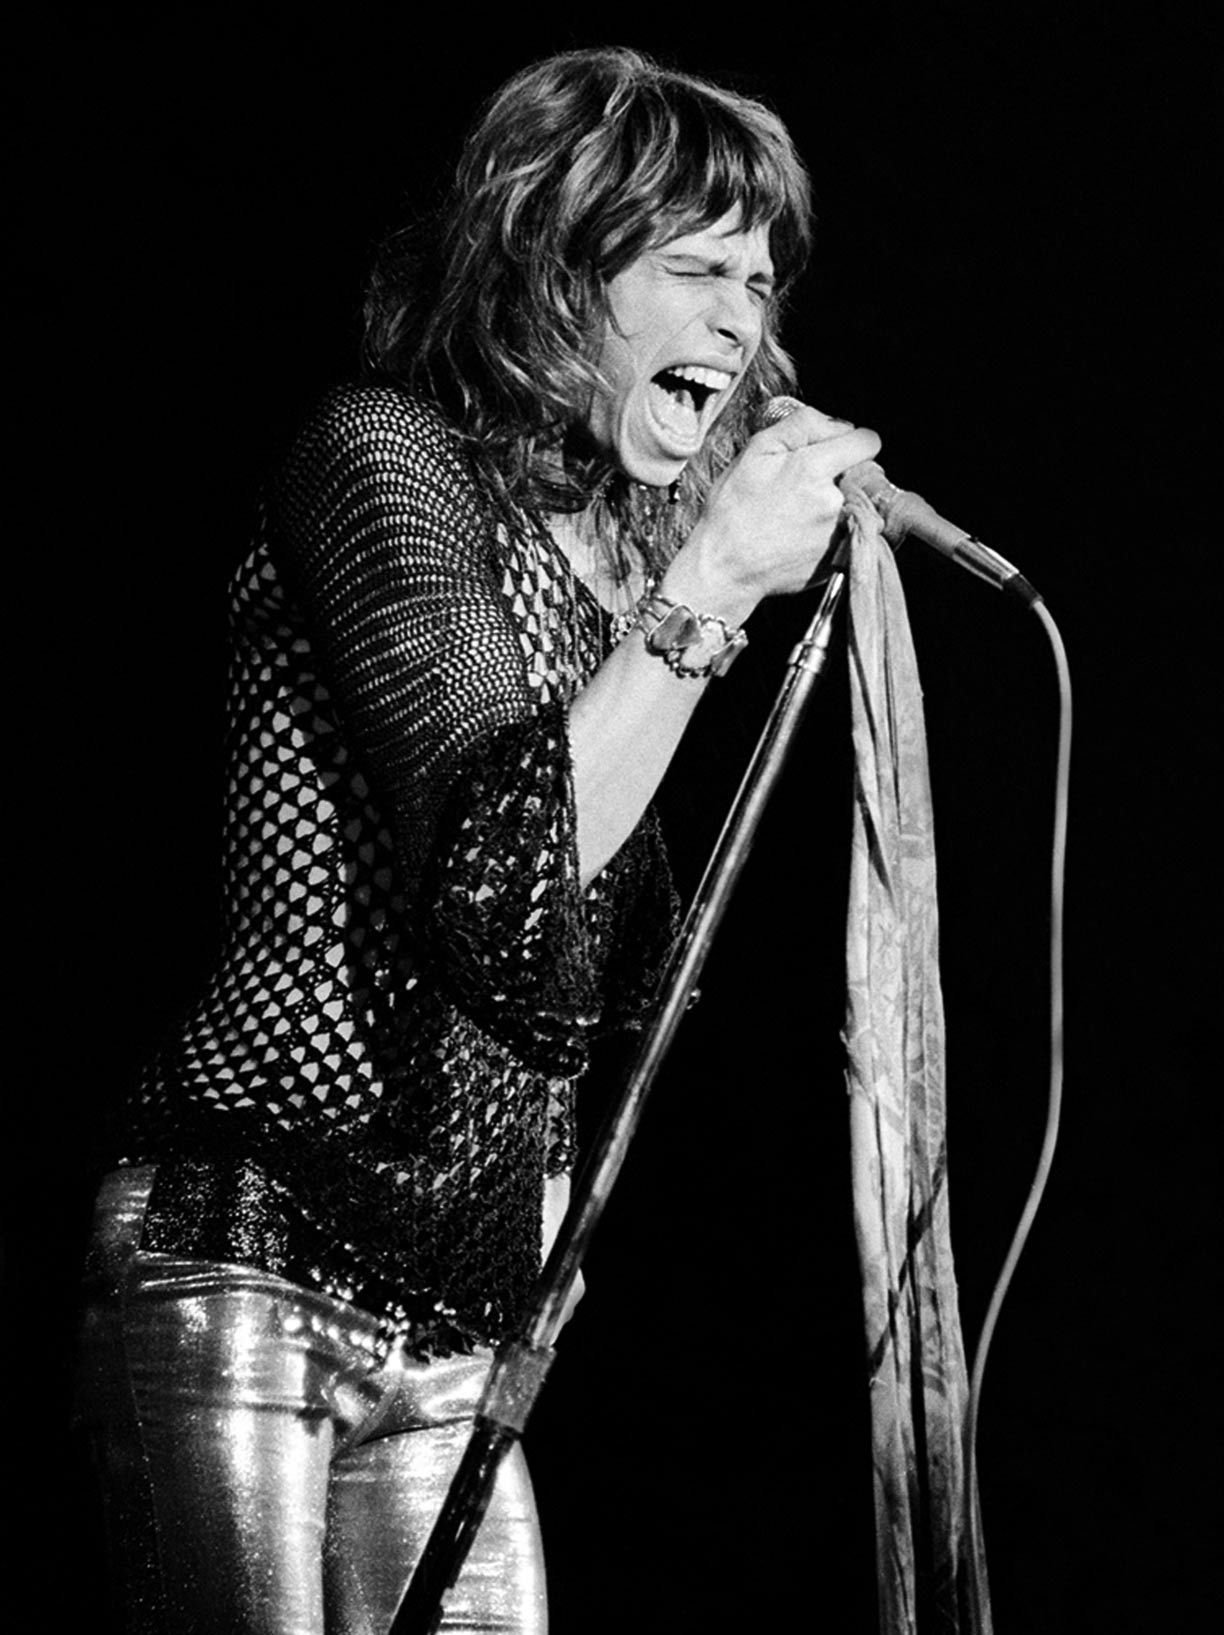 Steven Tyler Singing, Boston Music Hall, 1974